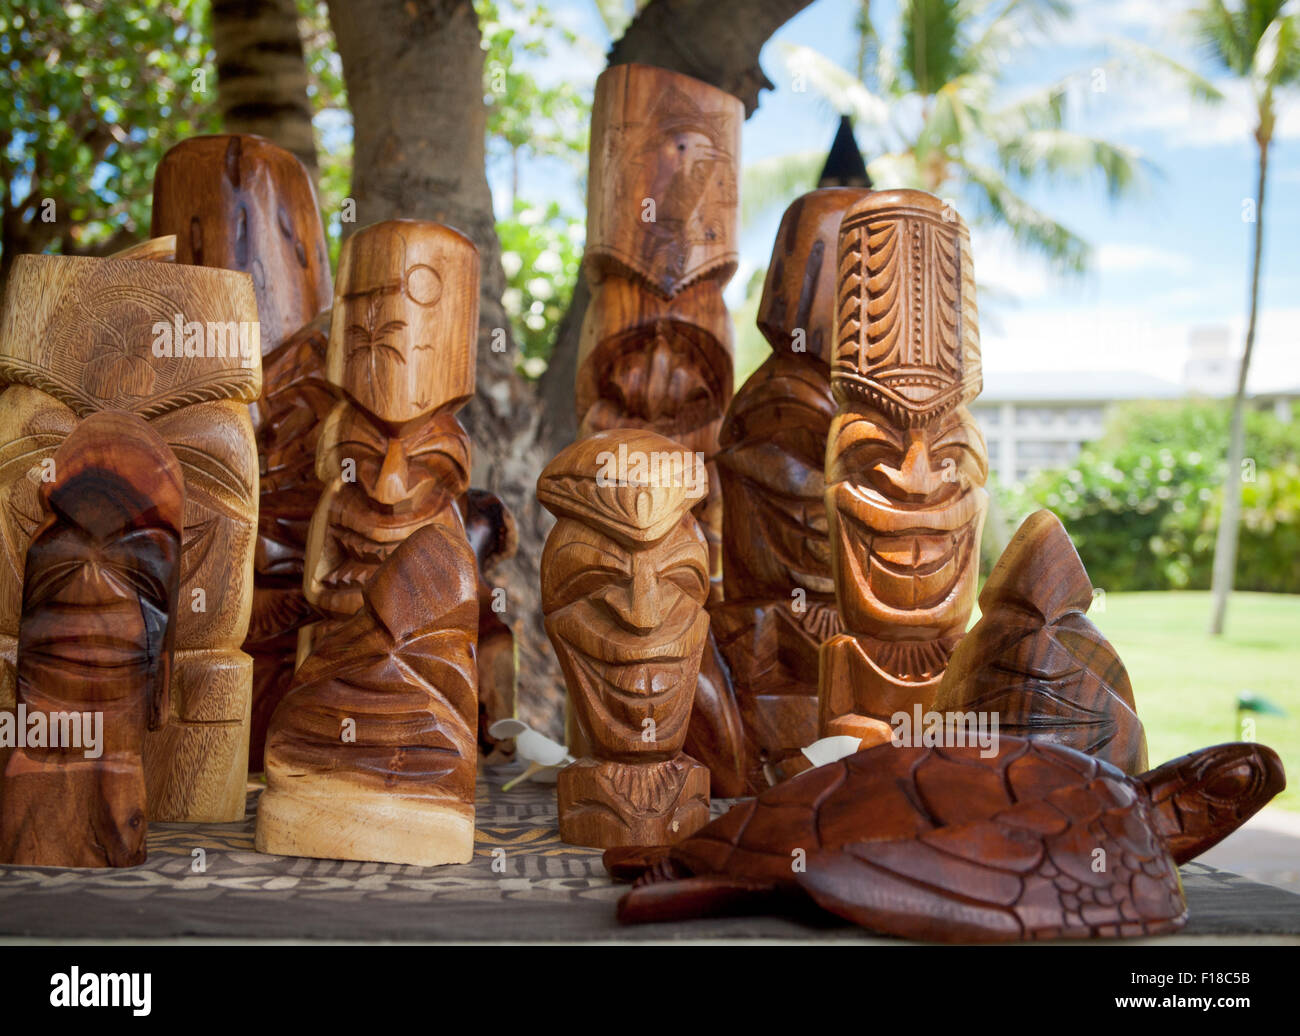 Scolpito a mano in legno sculture tiki, totem, e le statue di artista Hailame il lavaka. Costa di Kohala, Hawaii. Foto Stock